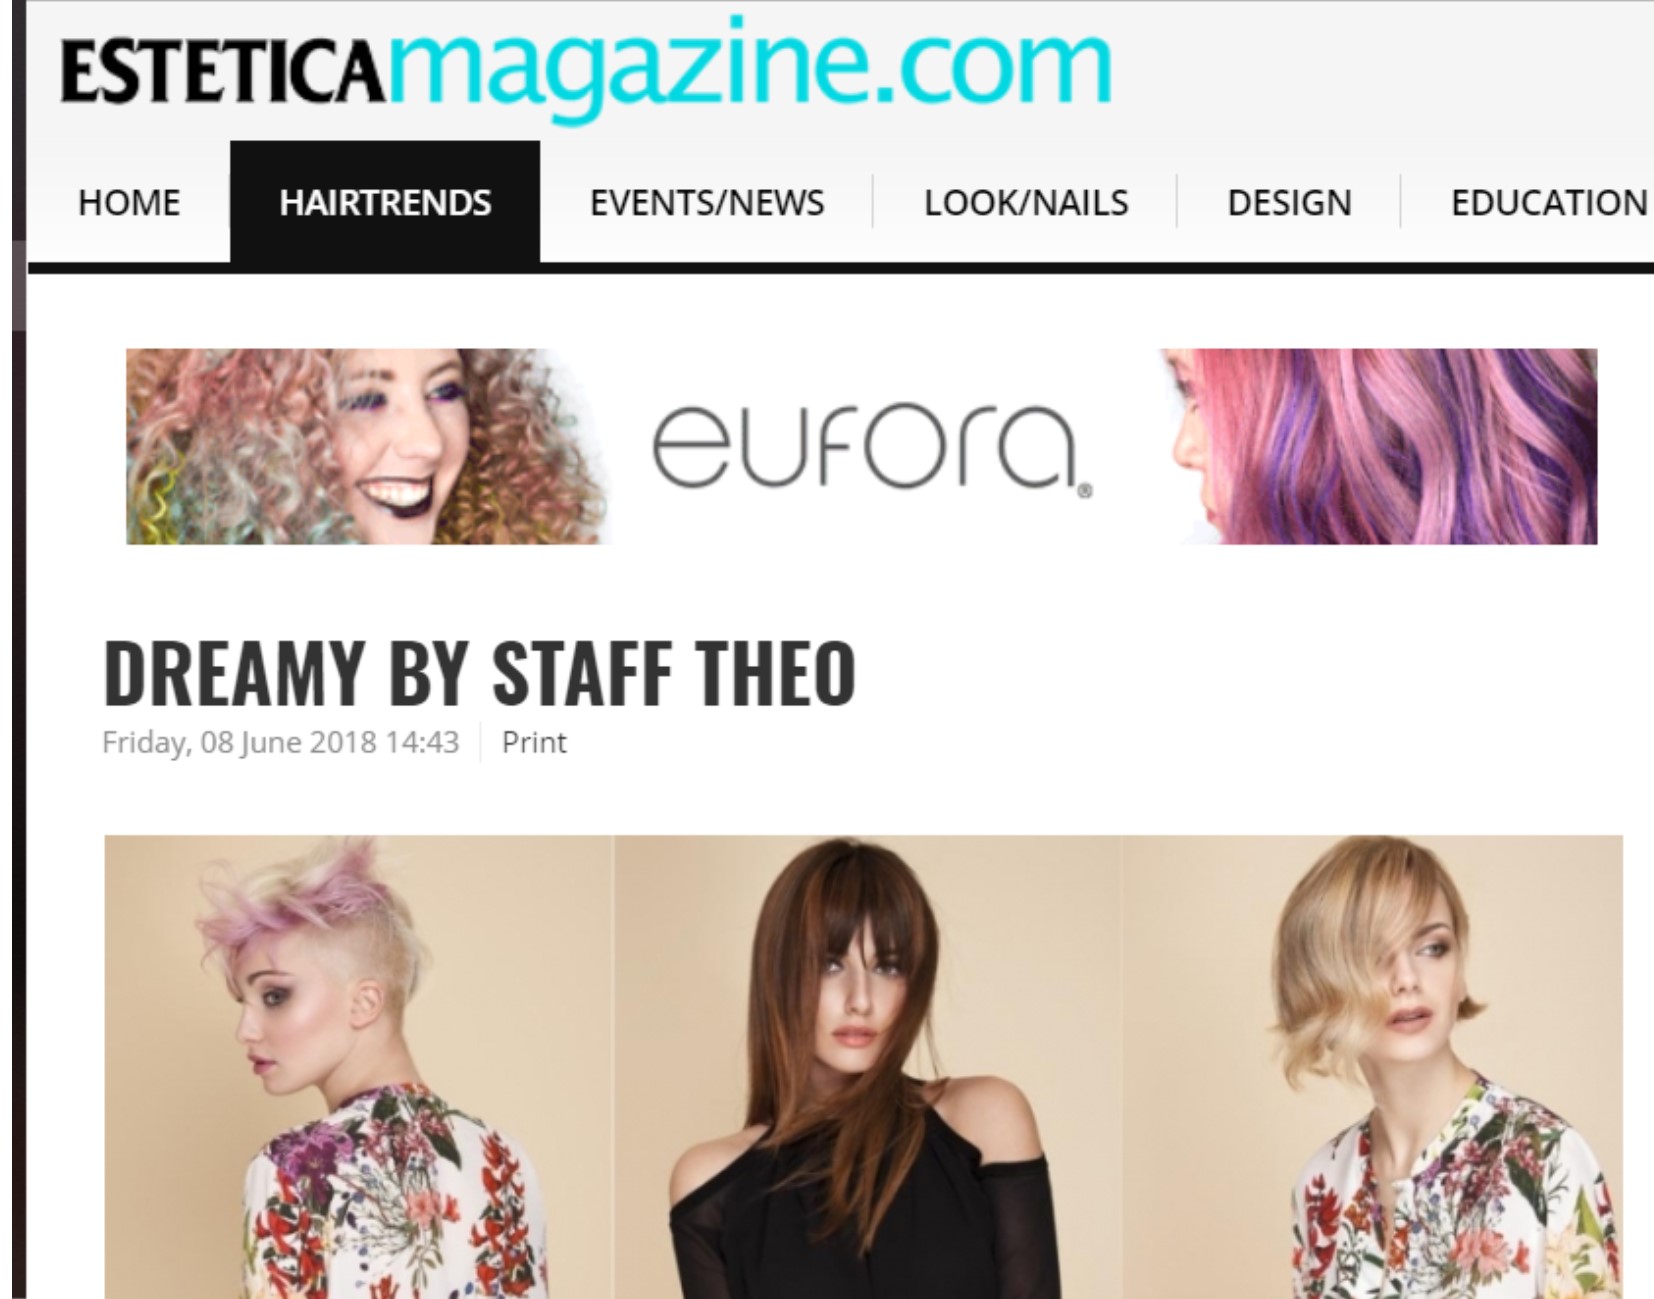 La Collezione “Dreamy” sulla versione internazionale del portale di Estetica!